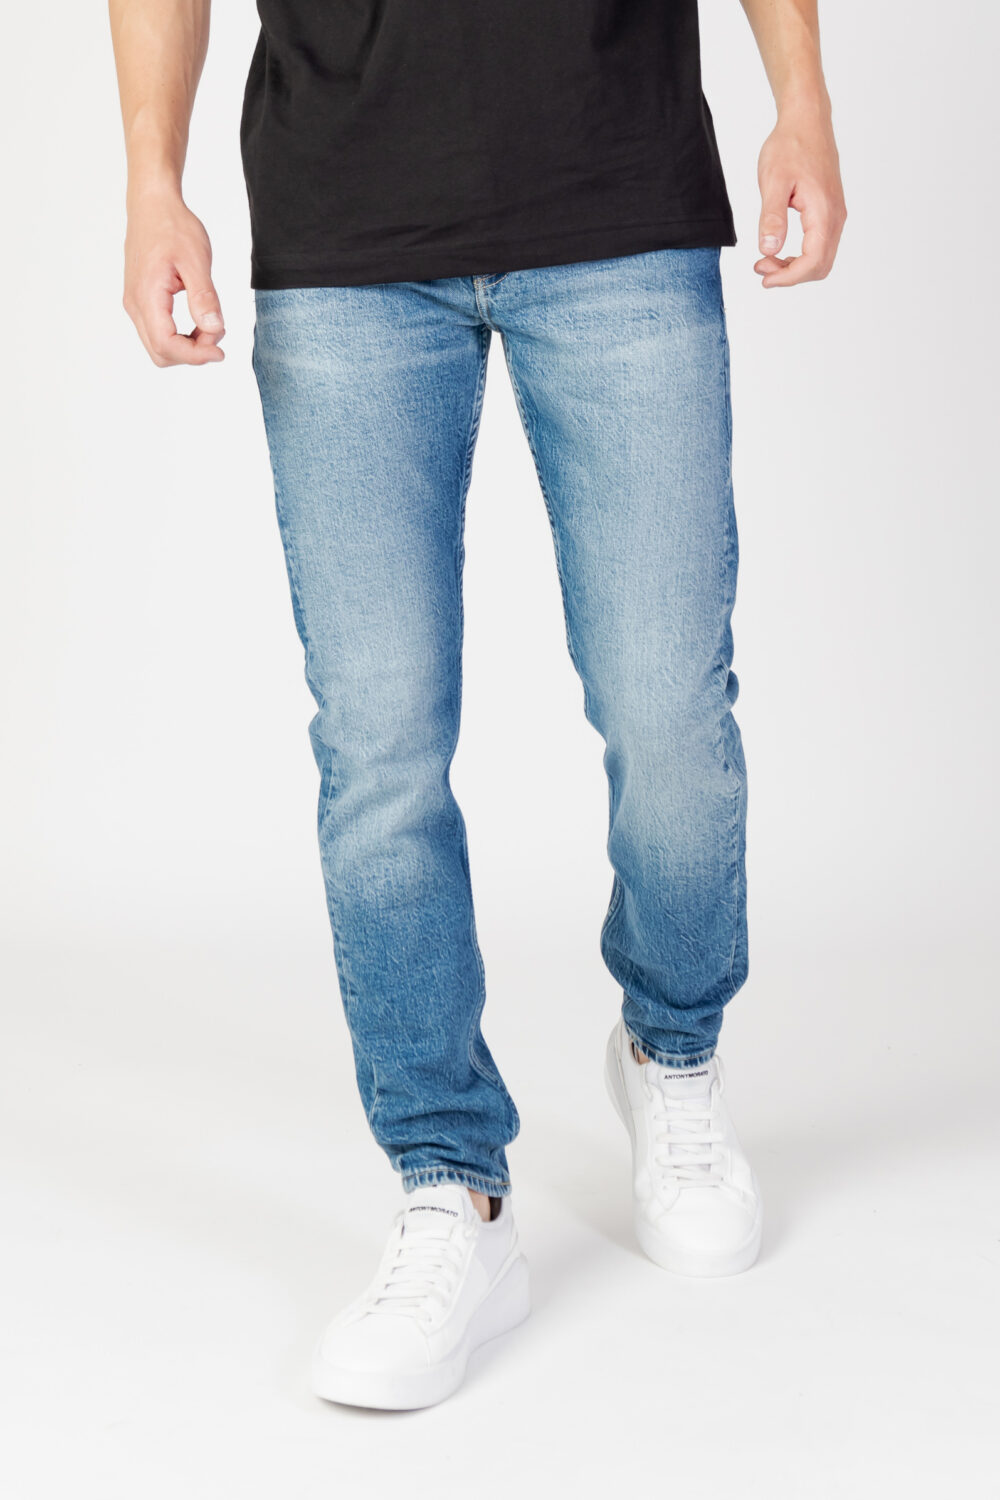 Jeans Tapered Calvin Klein Jeans slim taper Denim - Foto 1